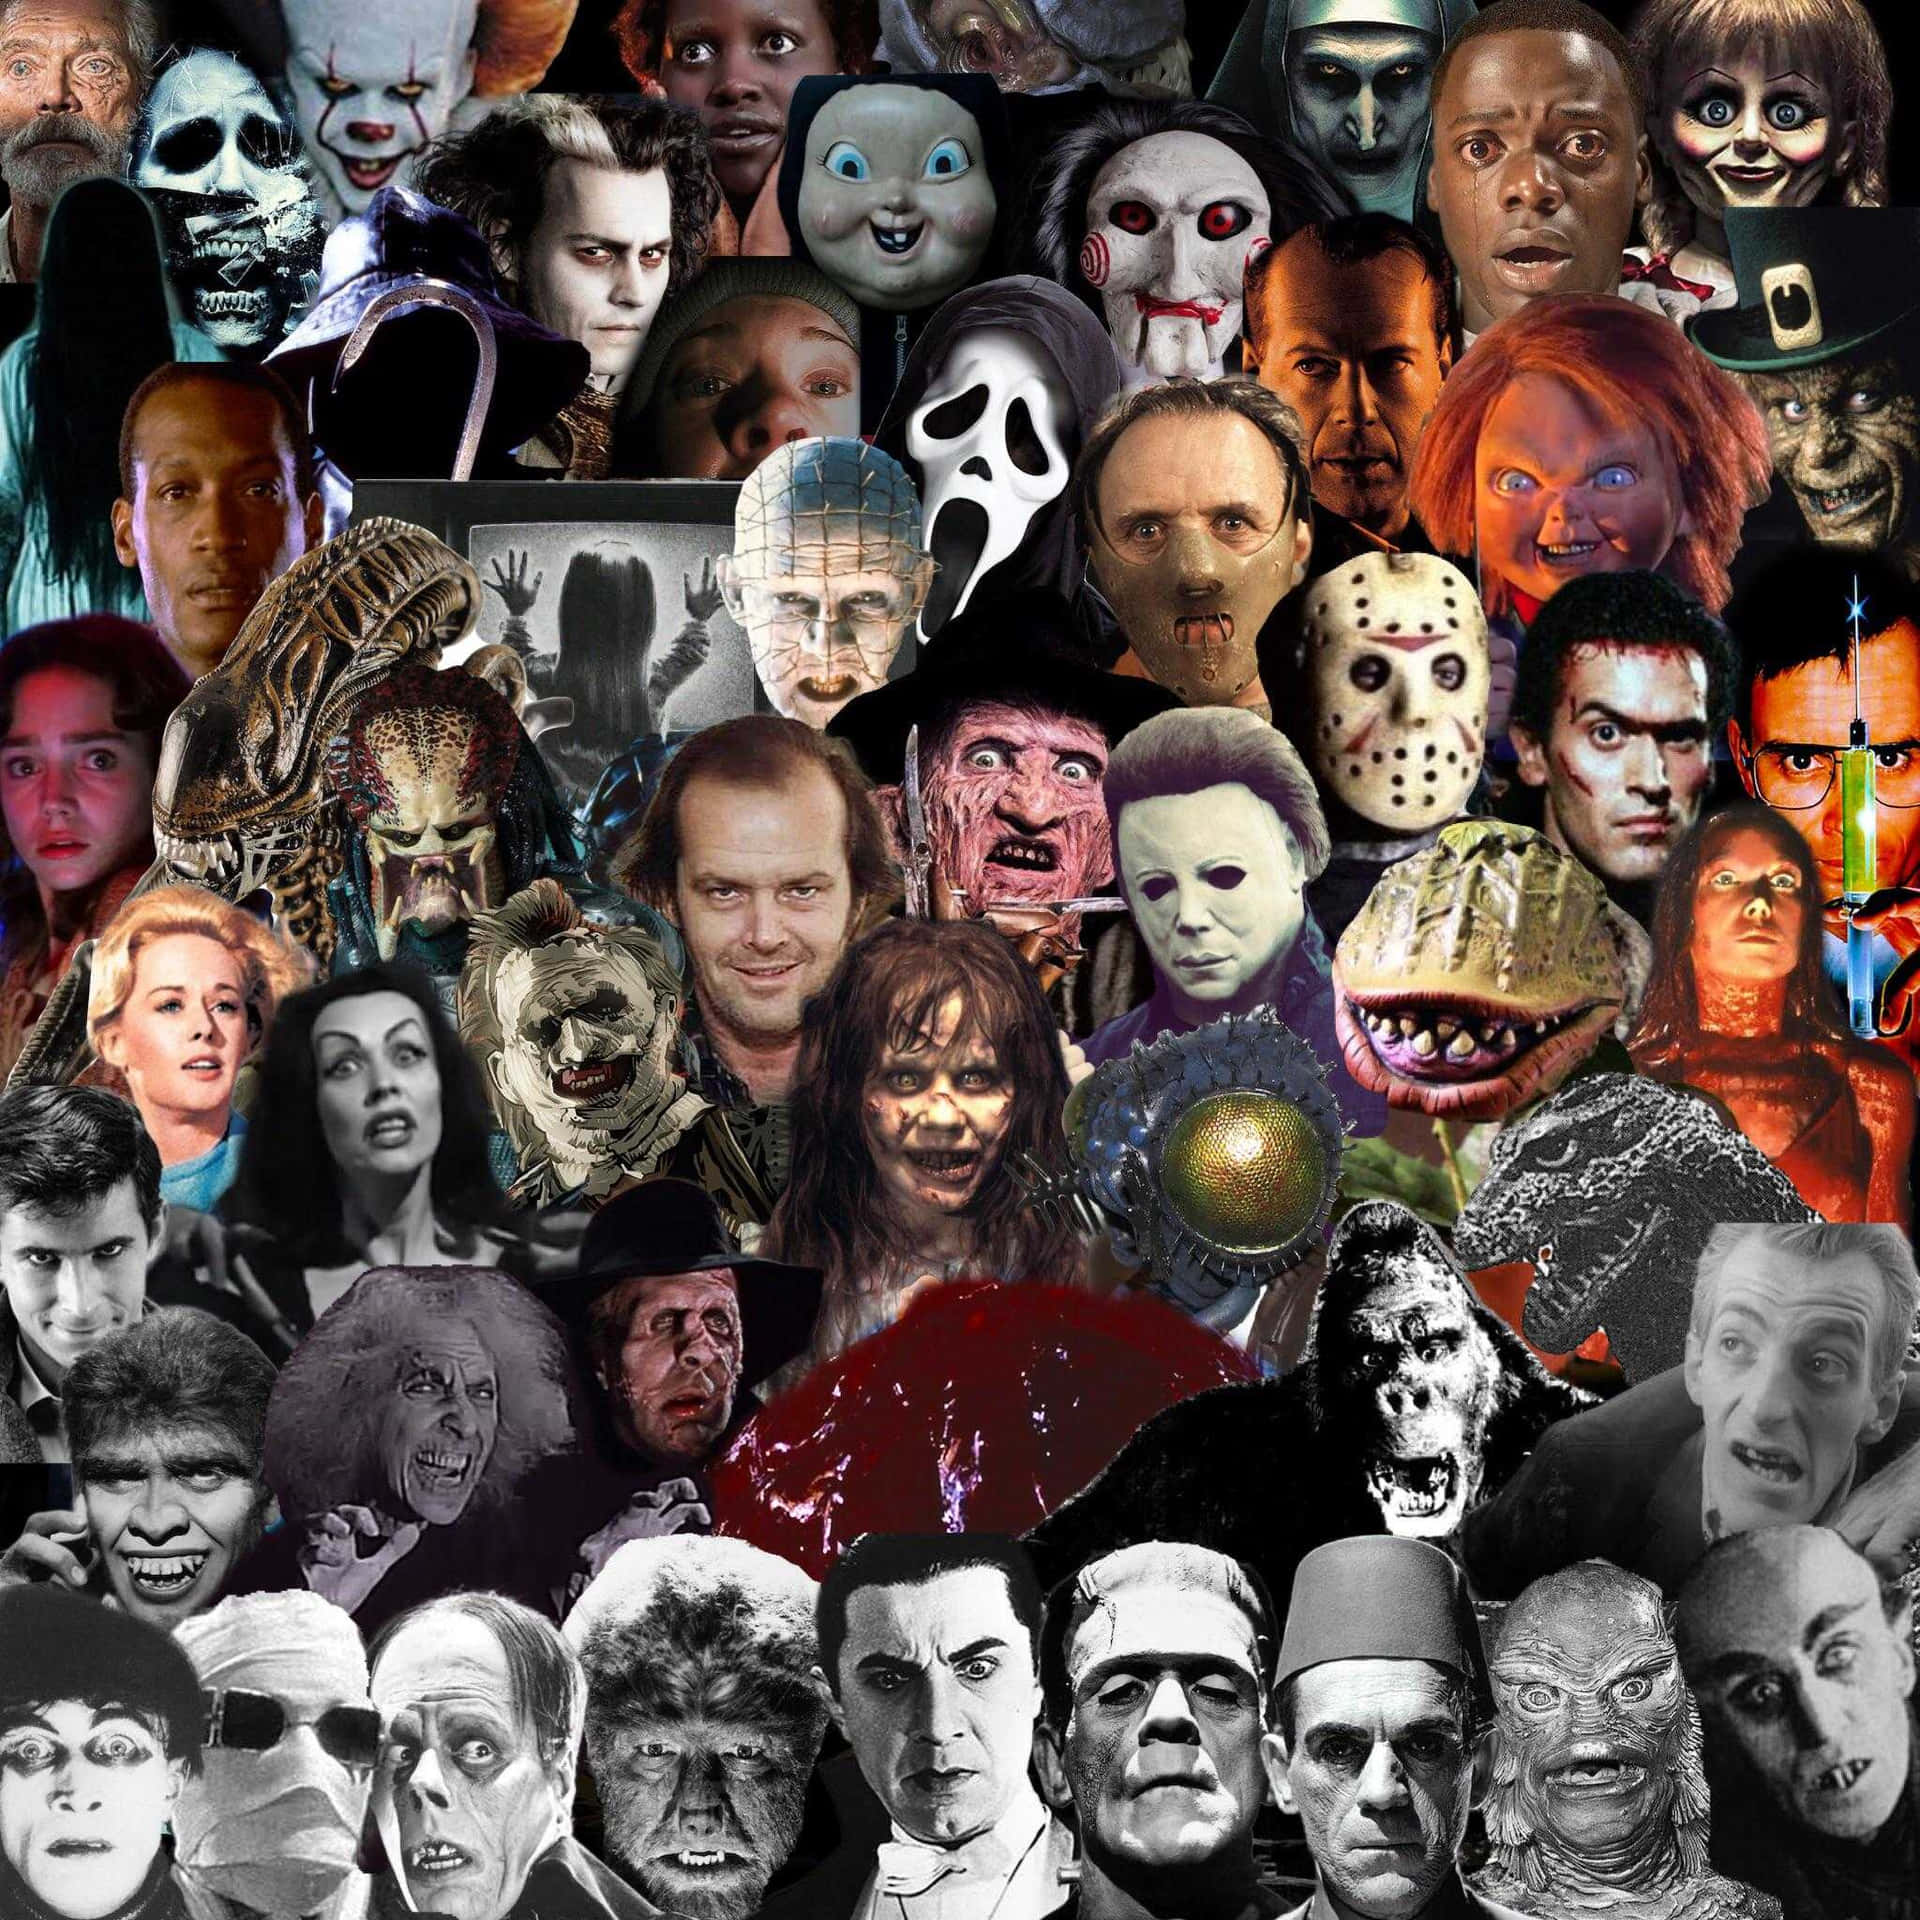 Fejre de mest skræmmende horror movie ikoner. Wallpaper